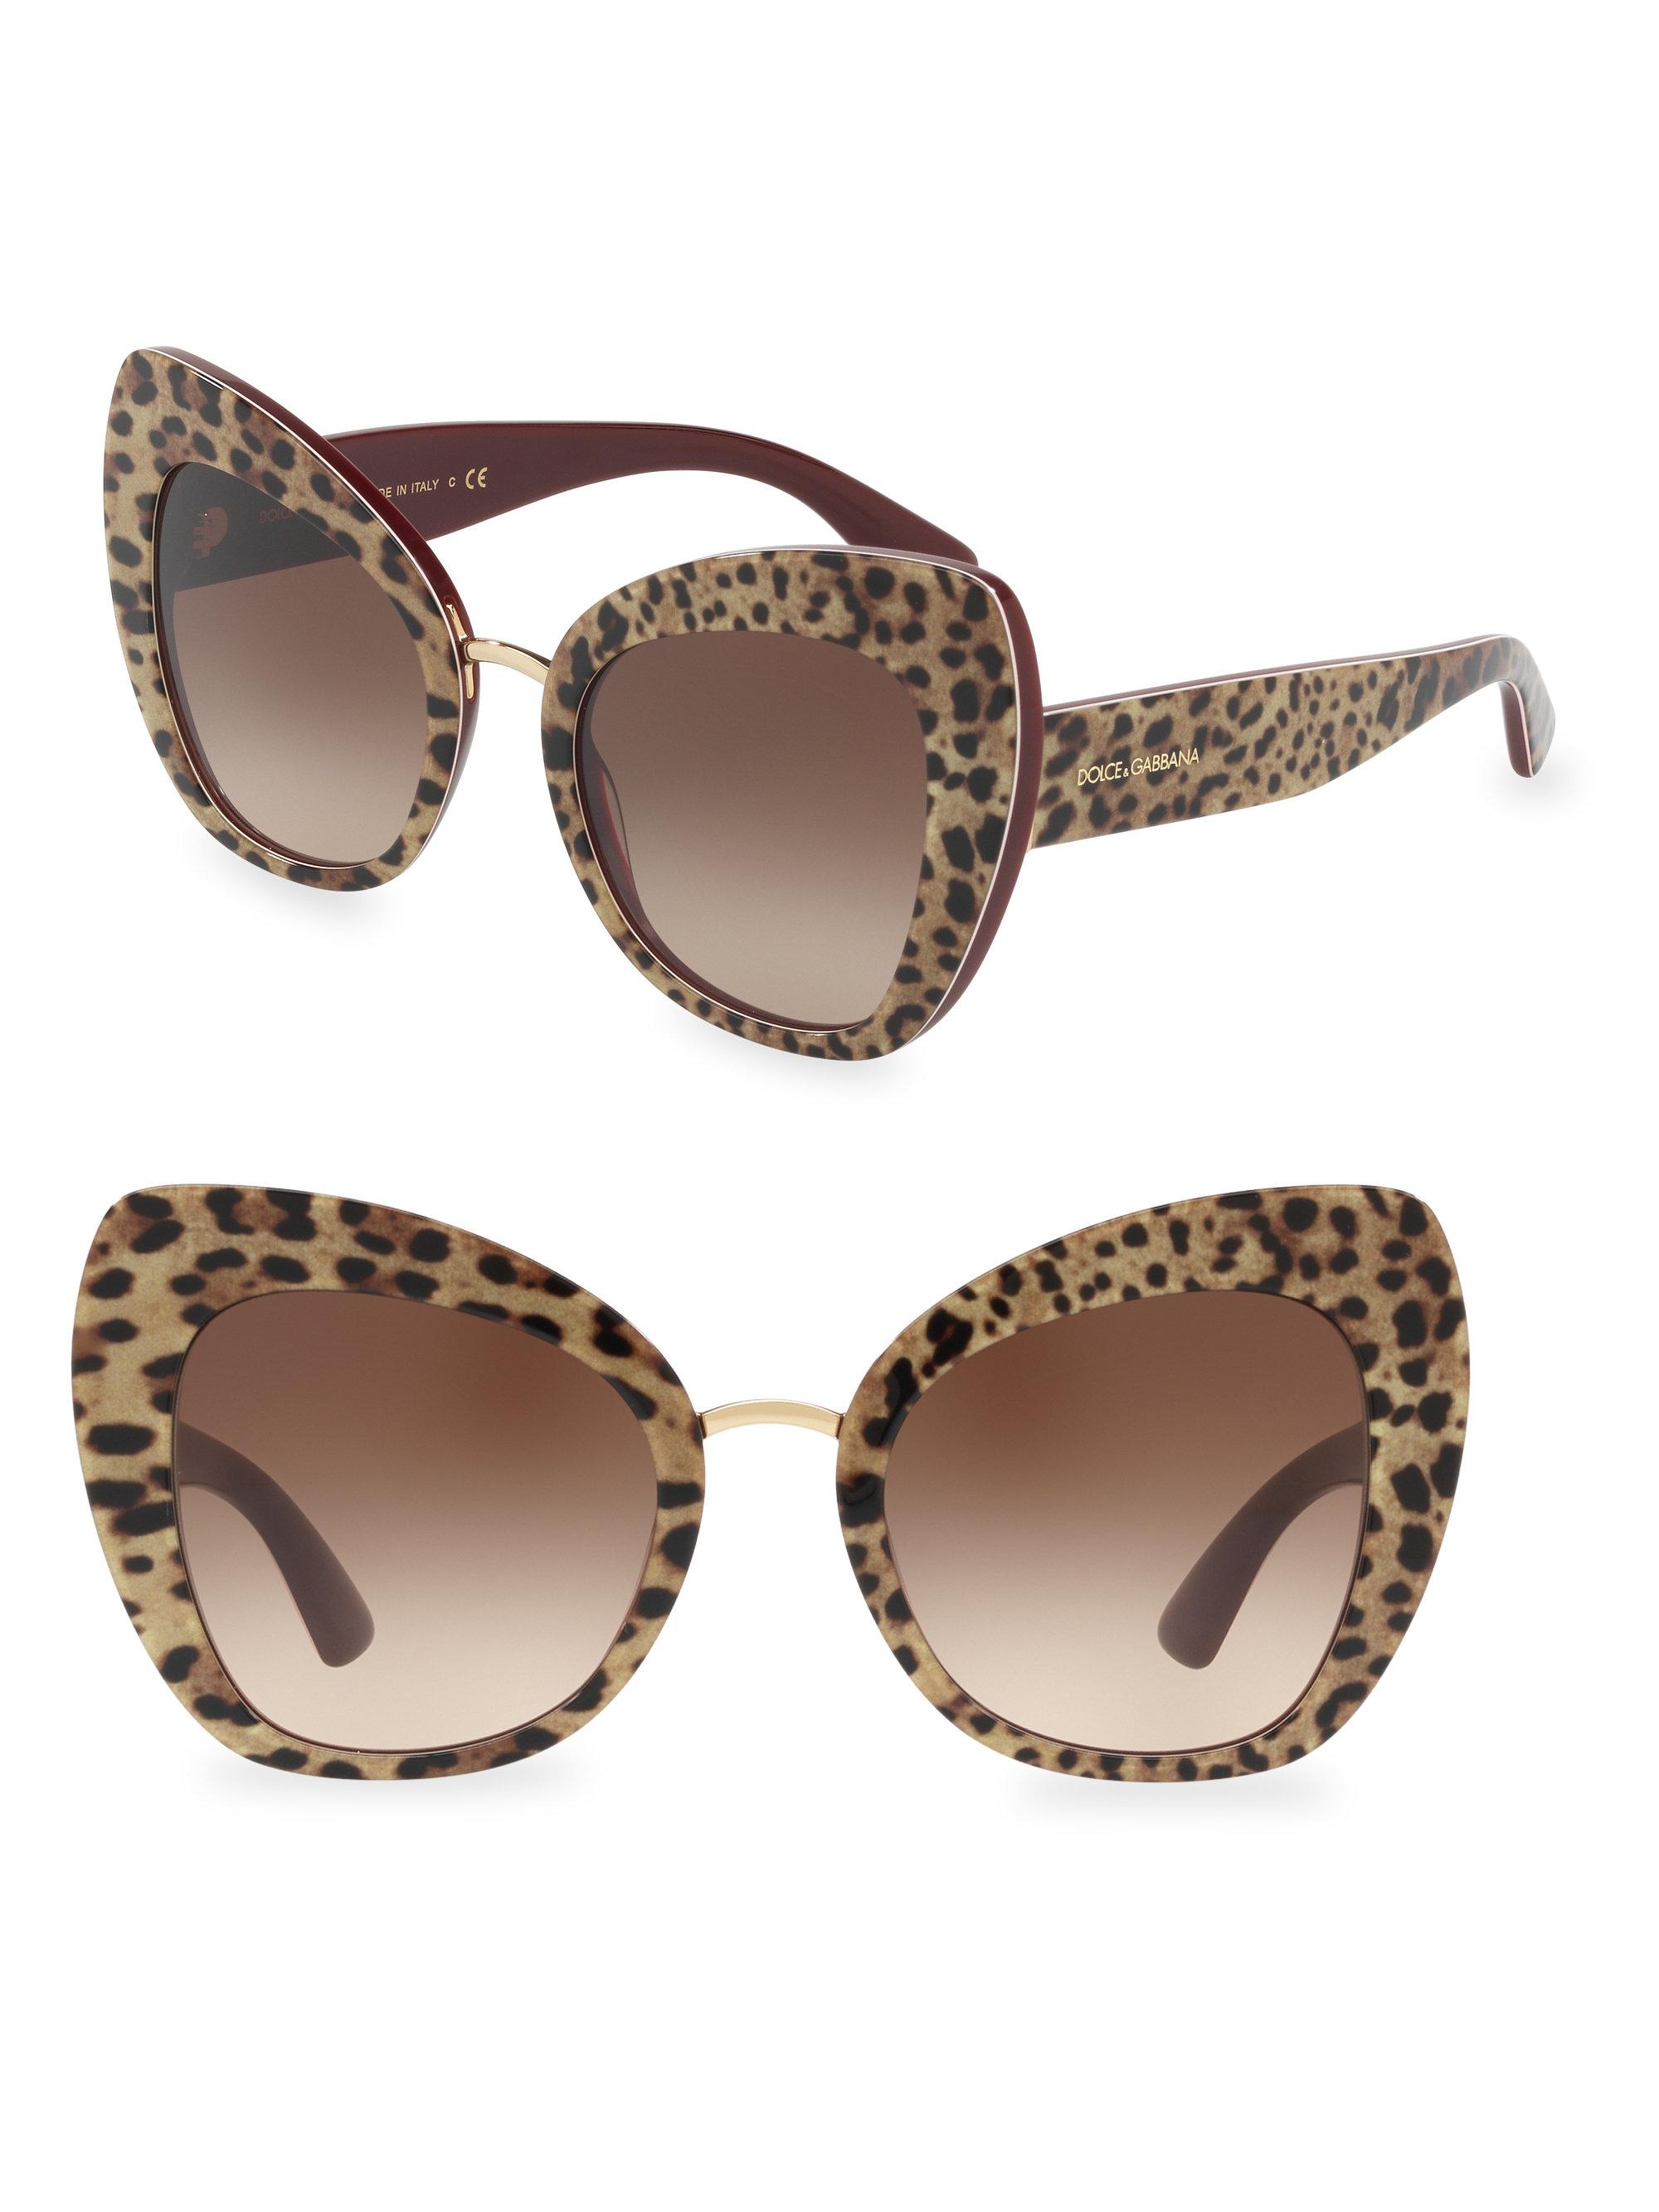 d&g butterfly sunglasses